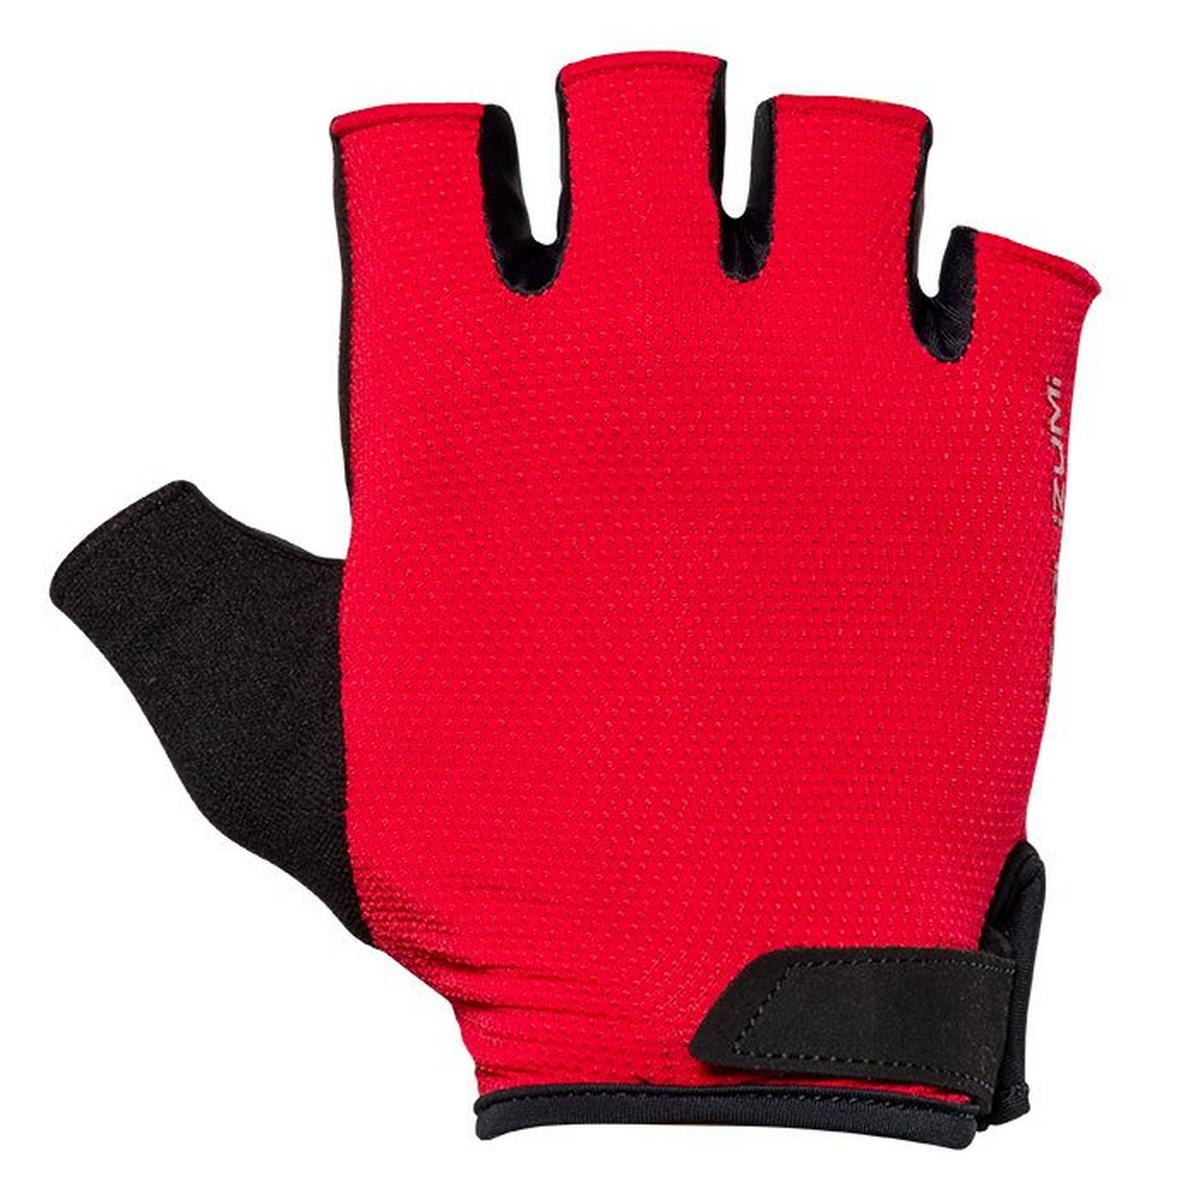 Men's Quest Gel Glove